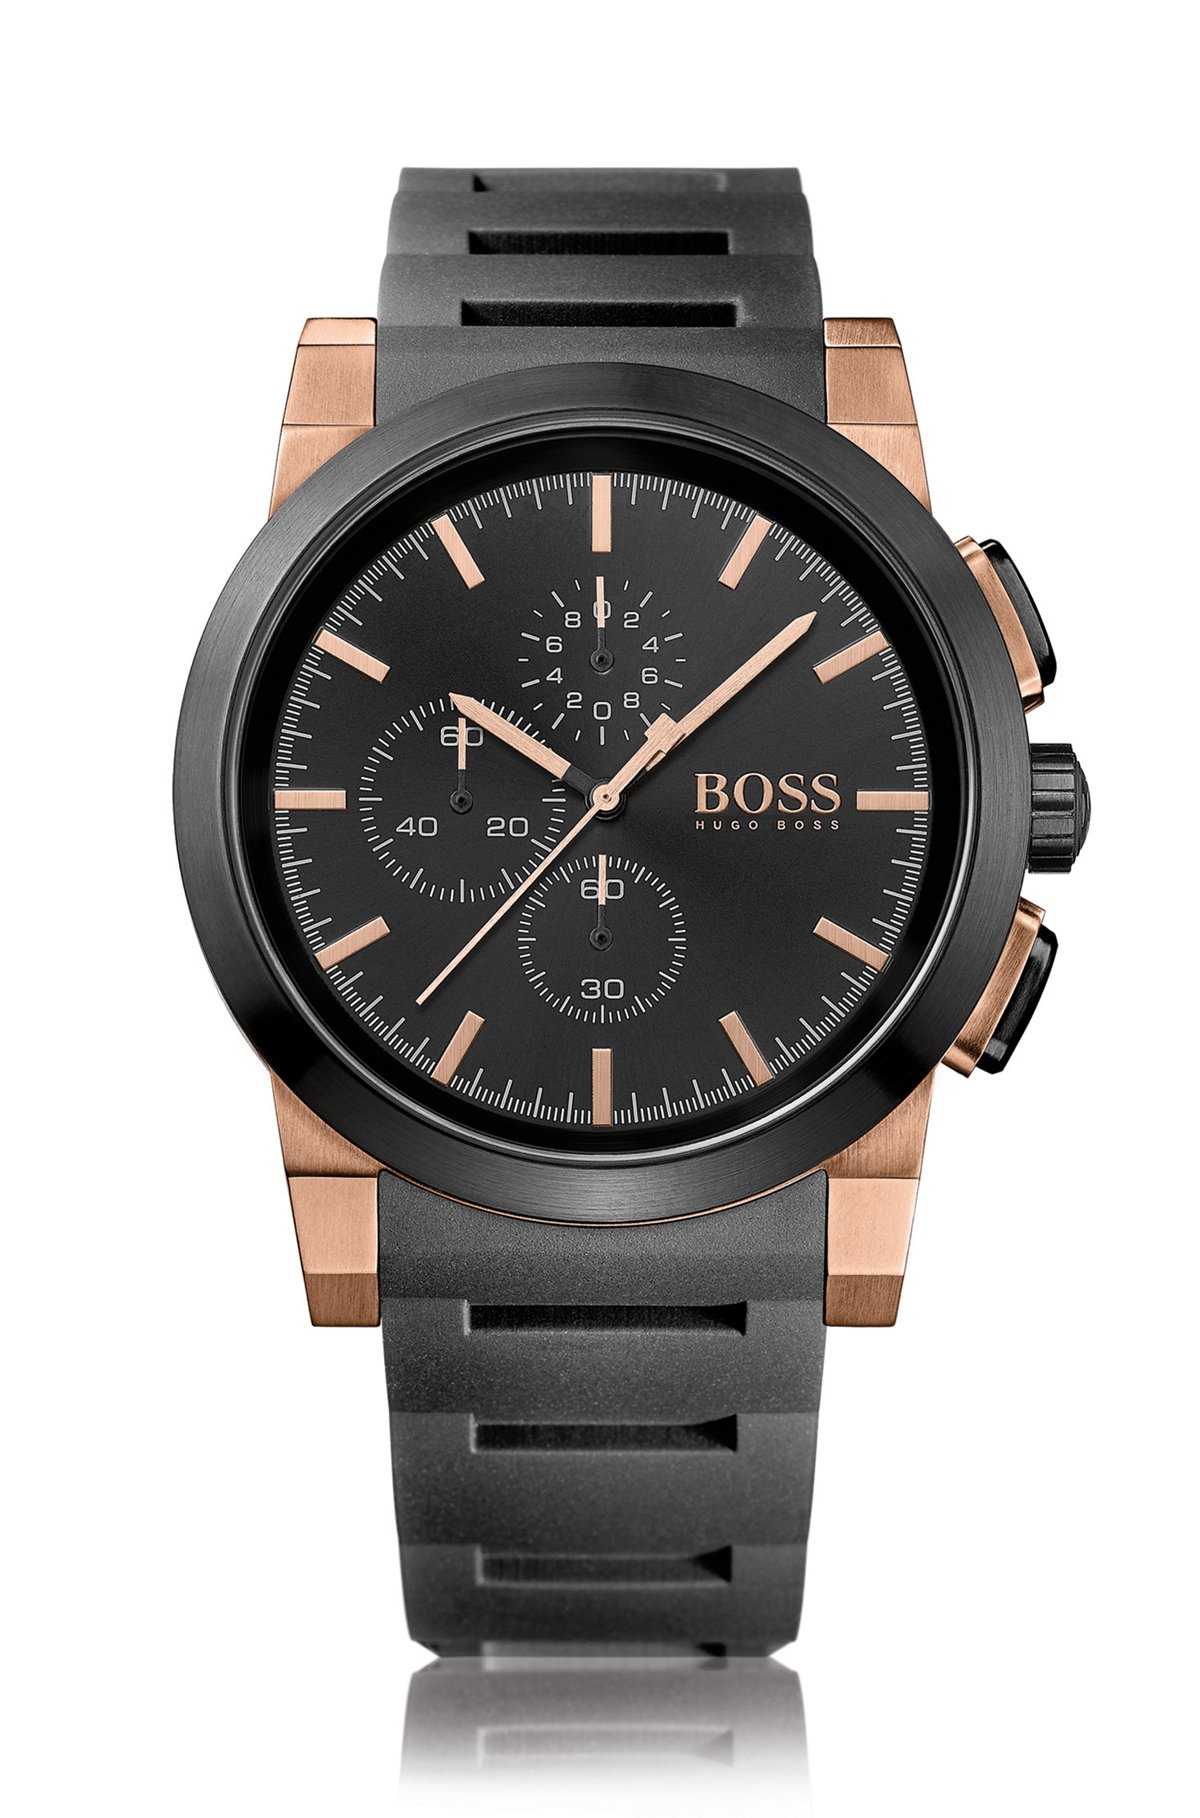 Часы хуго босс. Часы Boss Hugo Boss. Наручные часы Boss Black hb1513628. Часы Boss Hugo Boss мужские. Черные часы Hugo Boss.